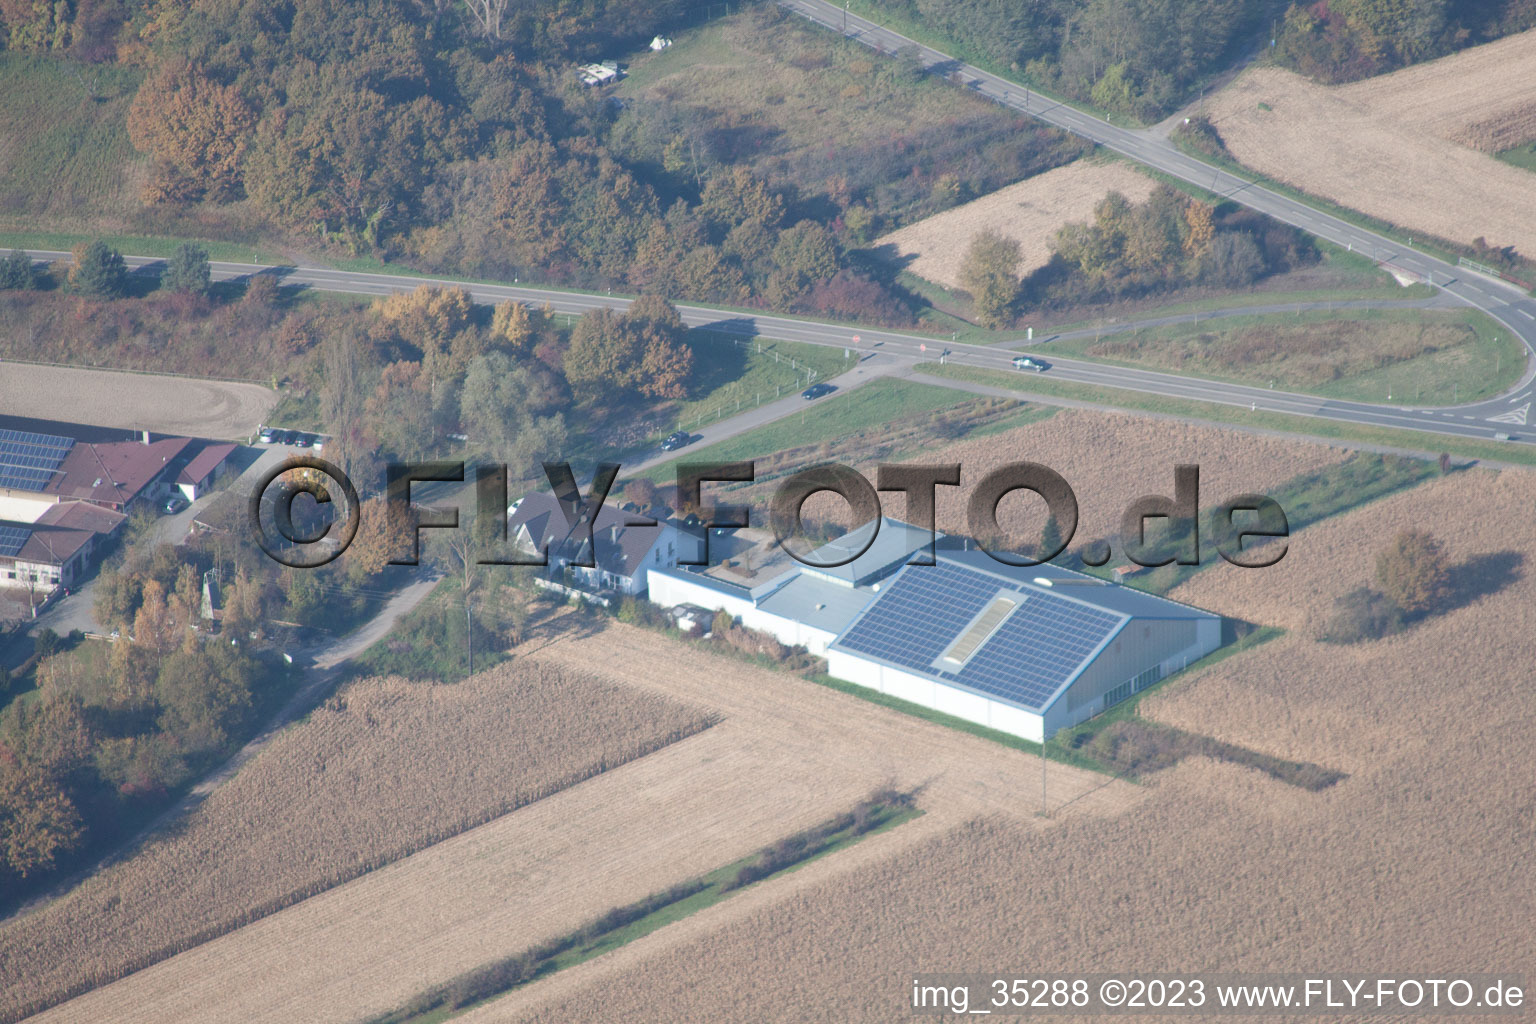 Hagenbach im Bundesland Rheinland-Pfalz, Deutschland von der Drohne aus gesehen